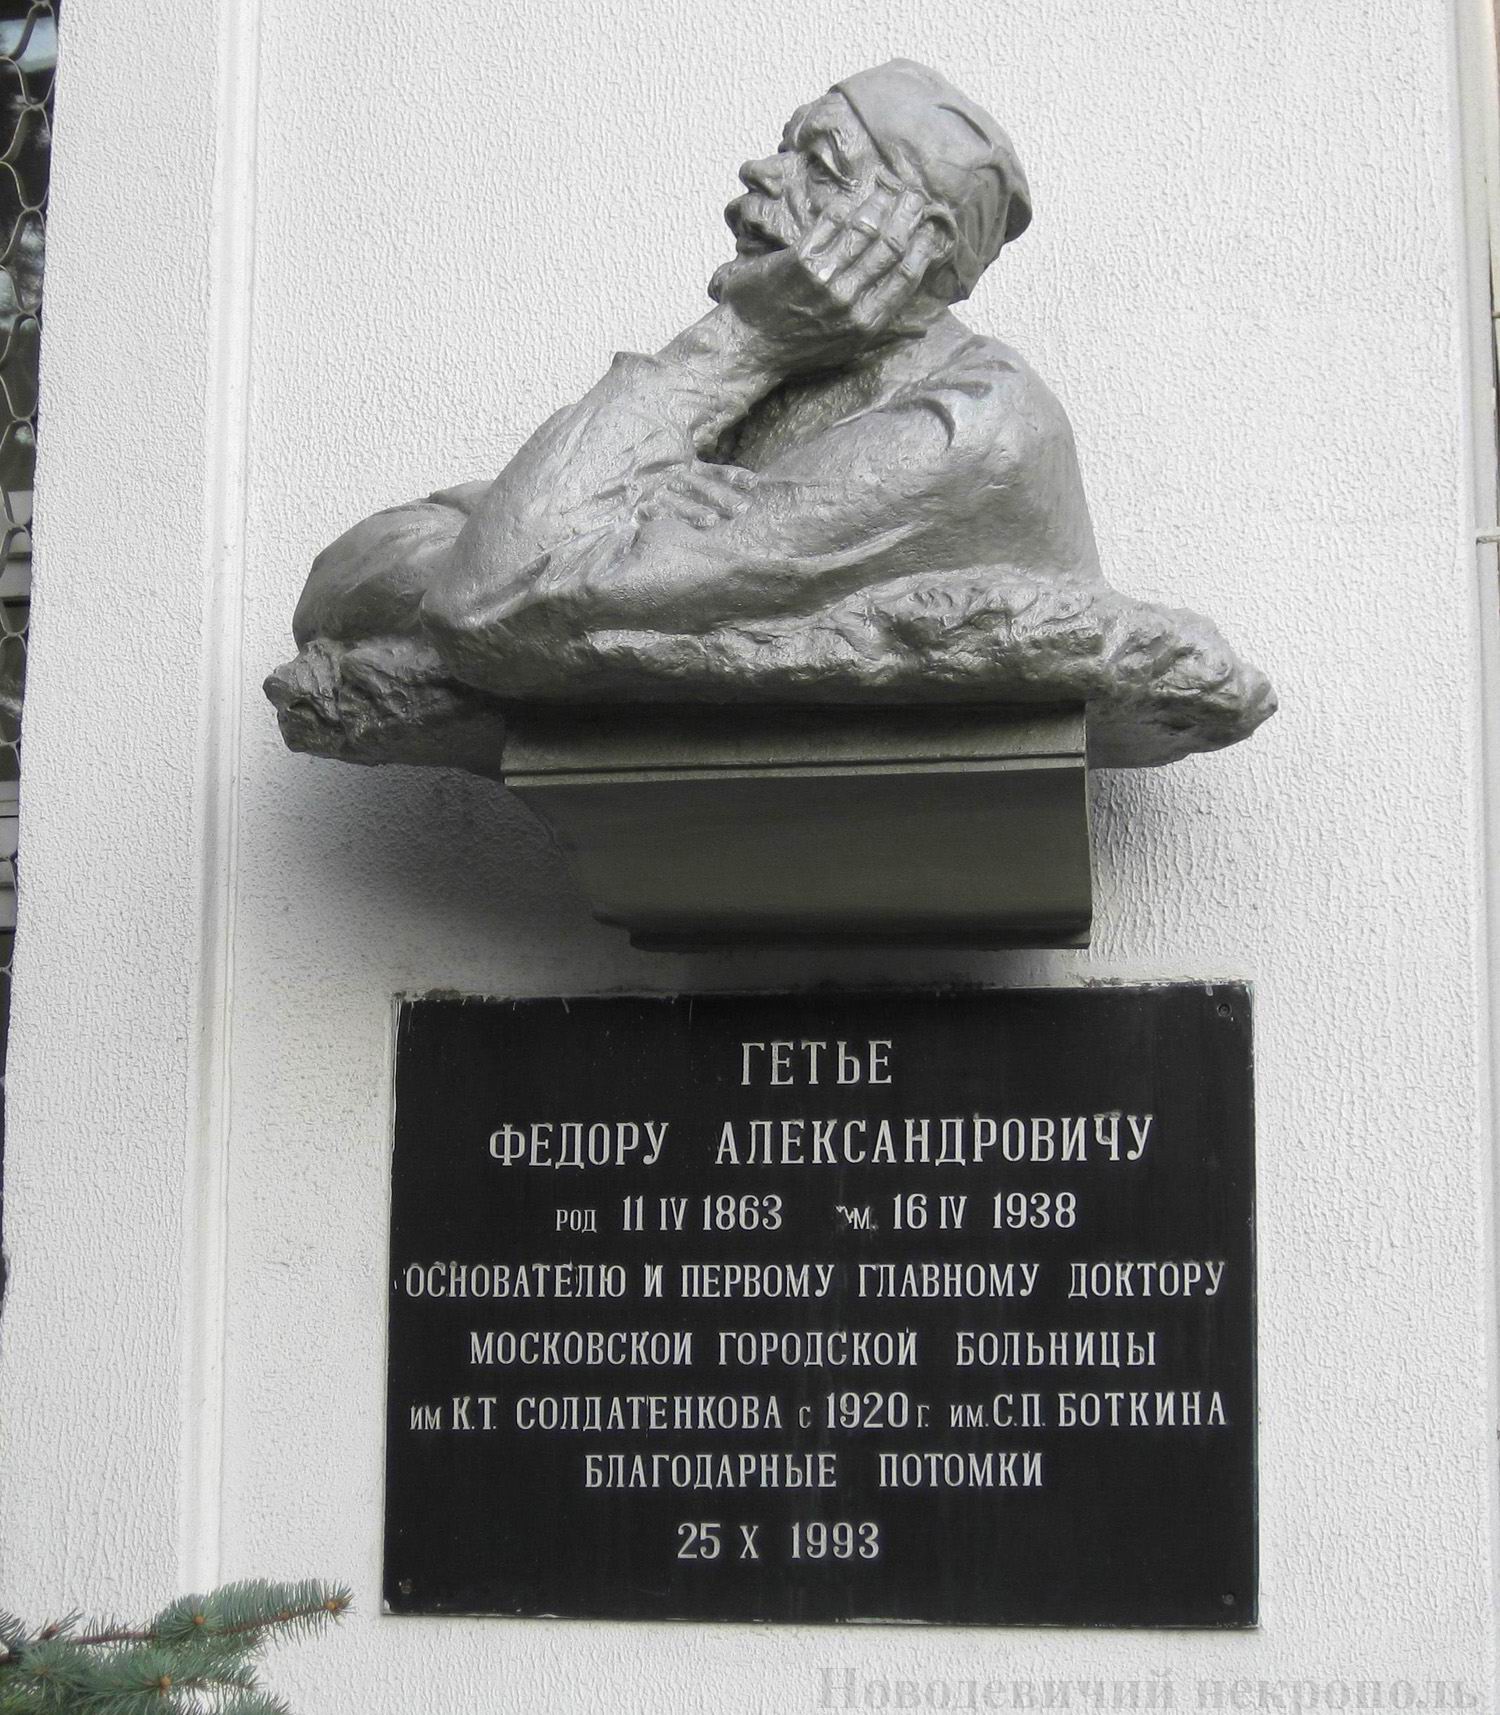 Мемориальная доска Гетье Ф.А. (1863-1938), во 2-м Боткинском проезде, дом 5, строение 3 (Административный корпус Боткинской больницы), открыта в 1993.